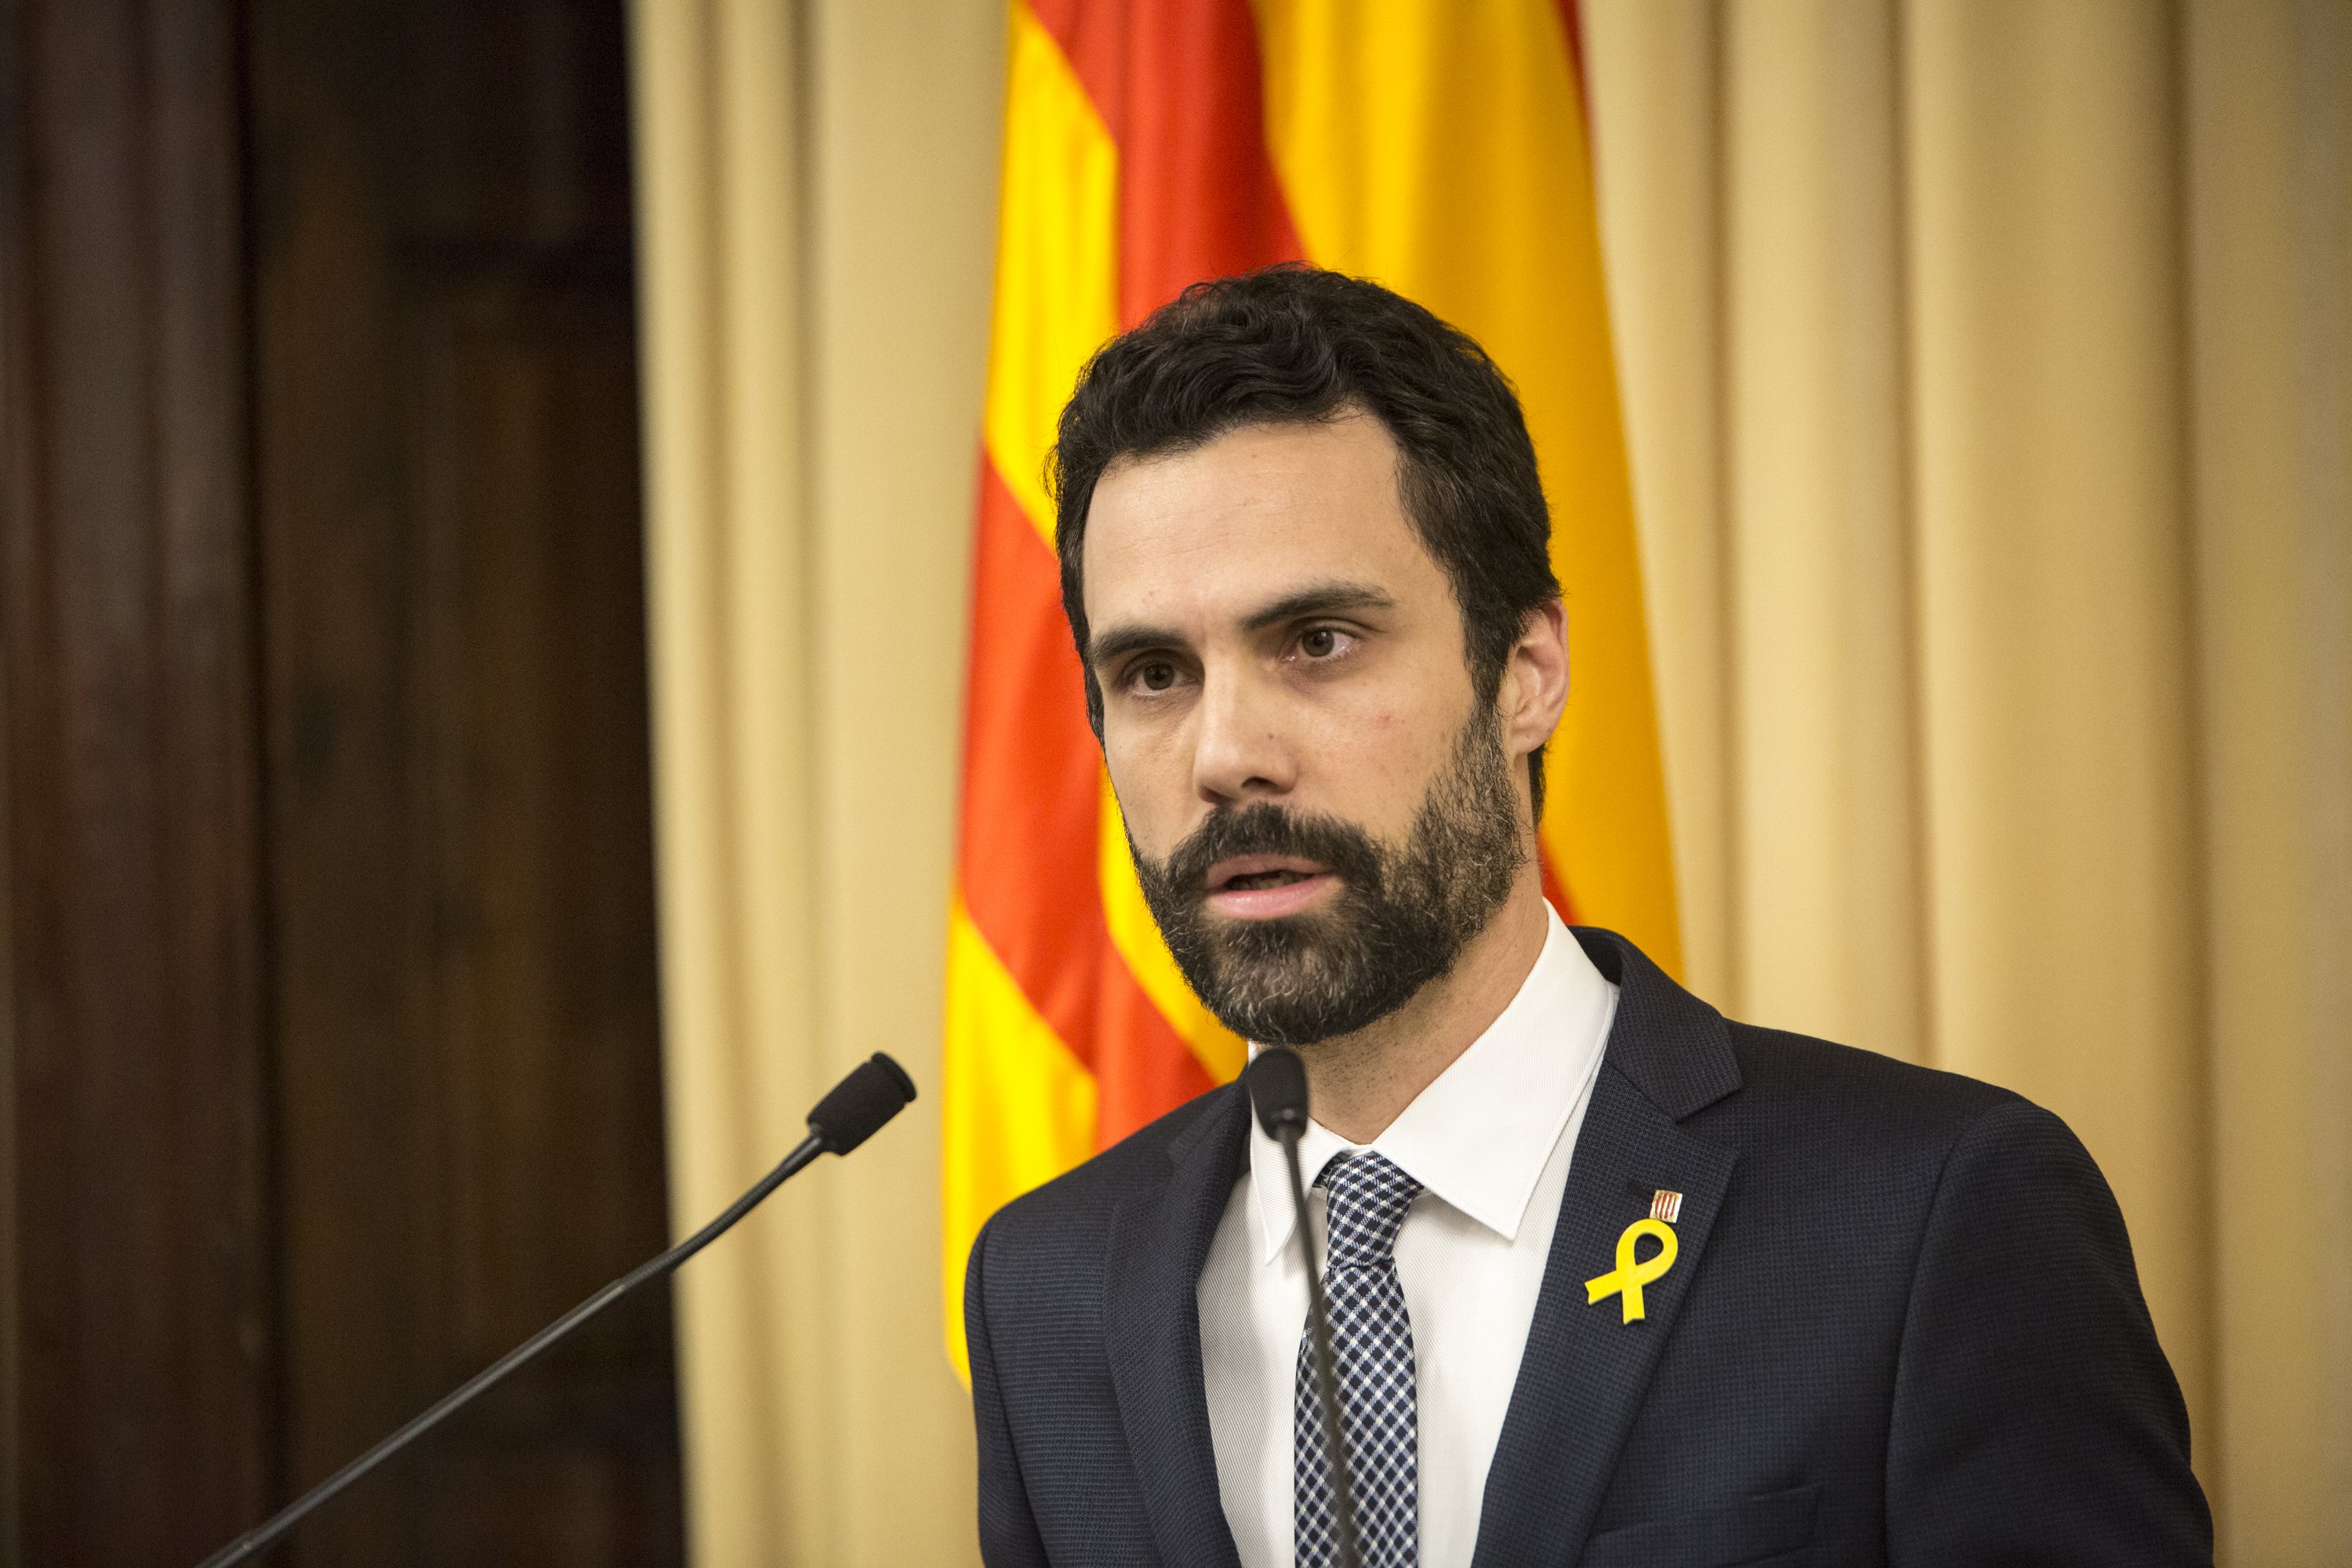 DOCUMENT: La carta de Torrent a Rajoy